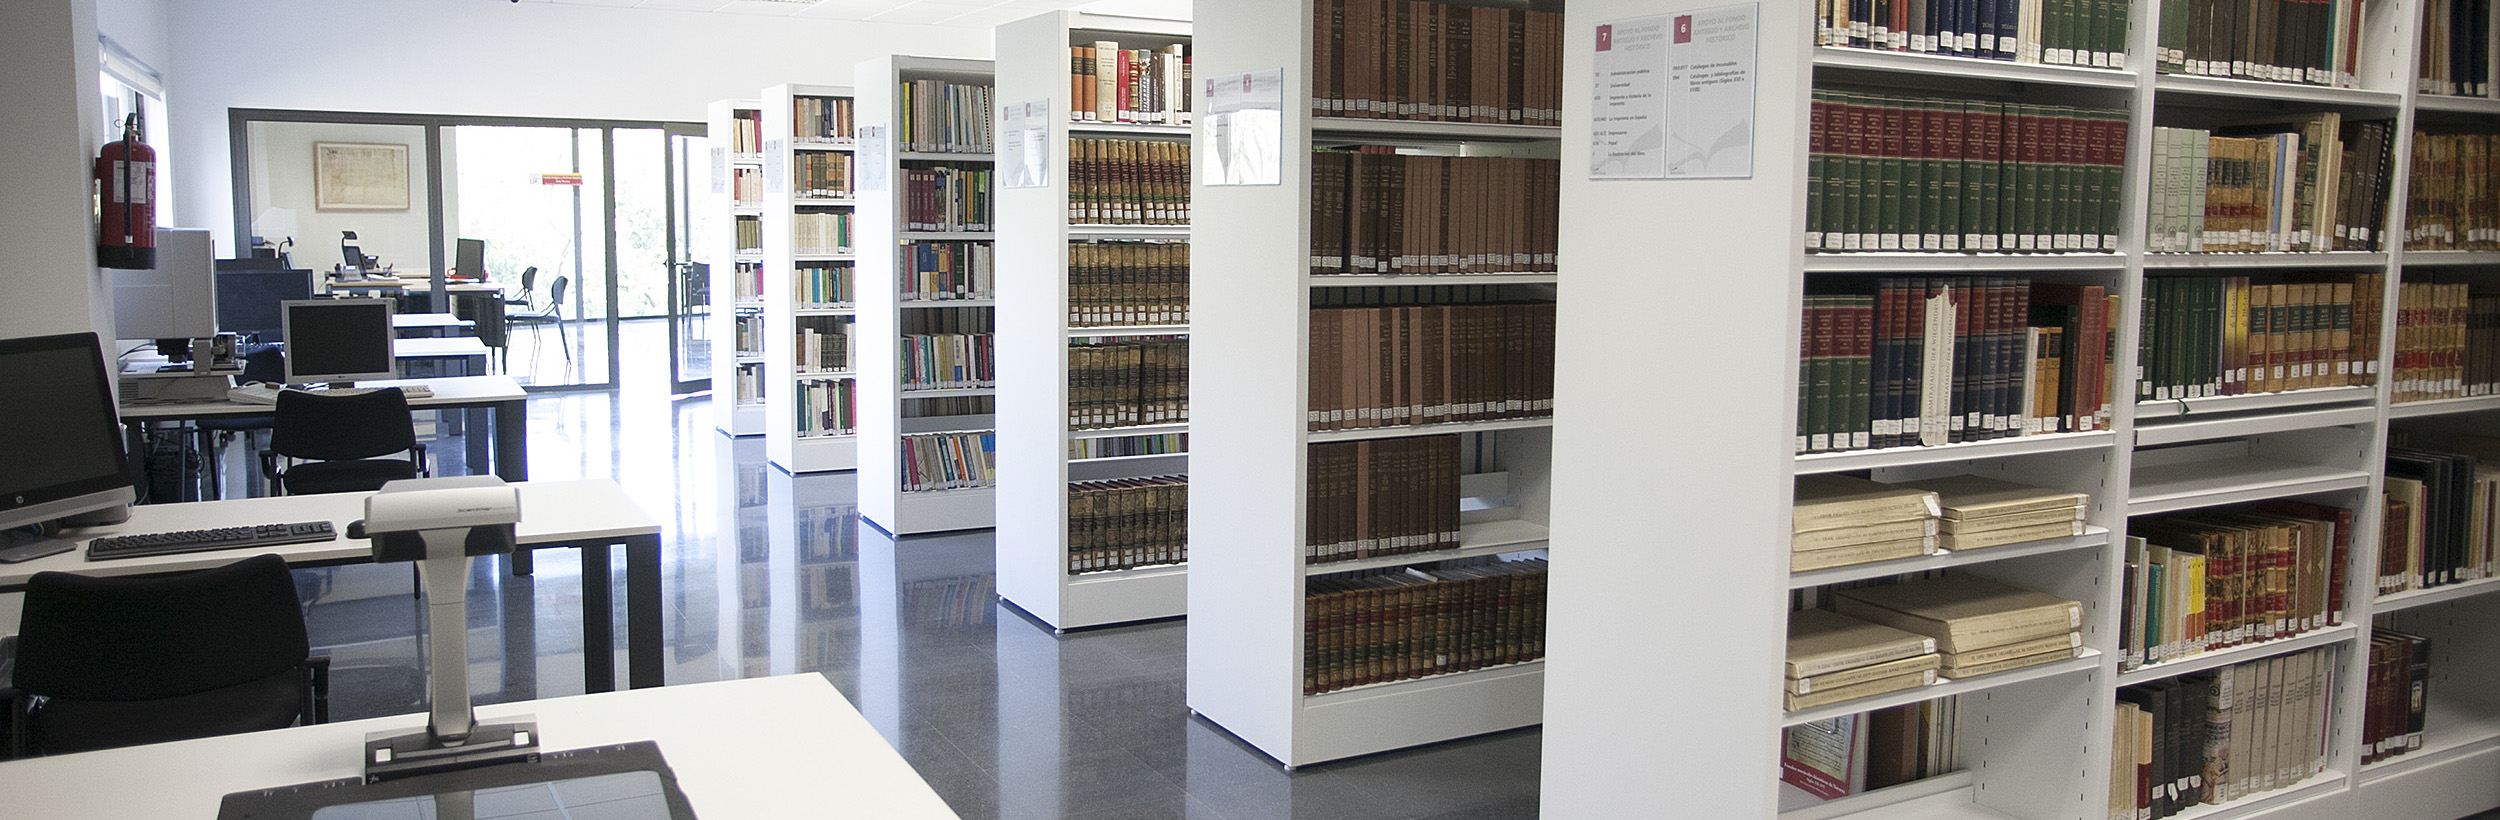 Biblioteca de la Universidad de Sevilla